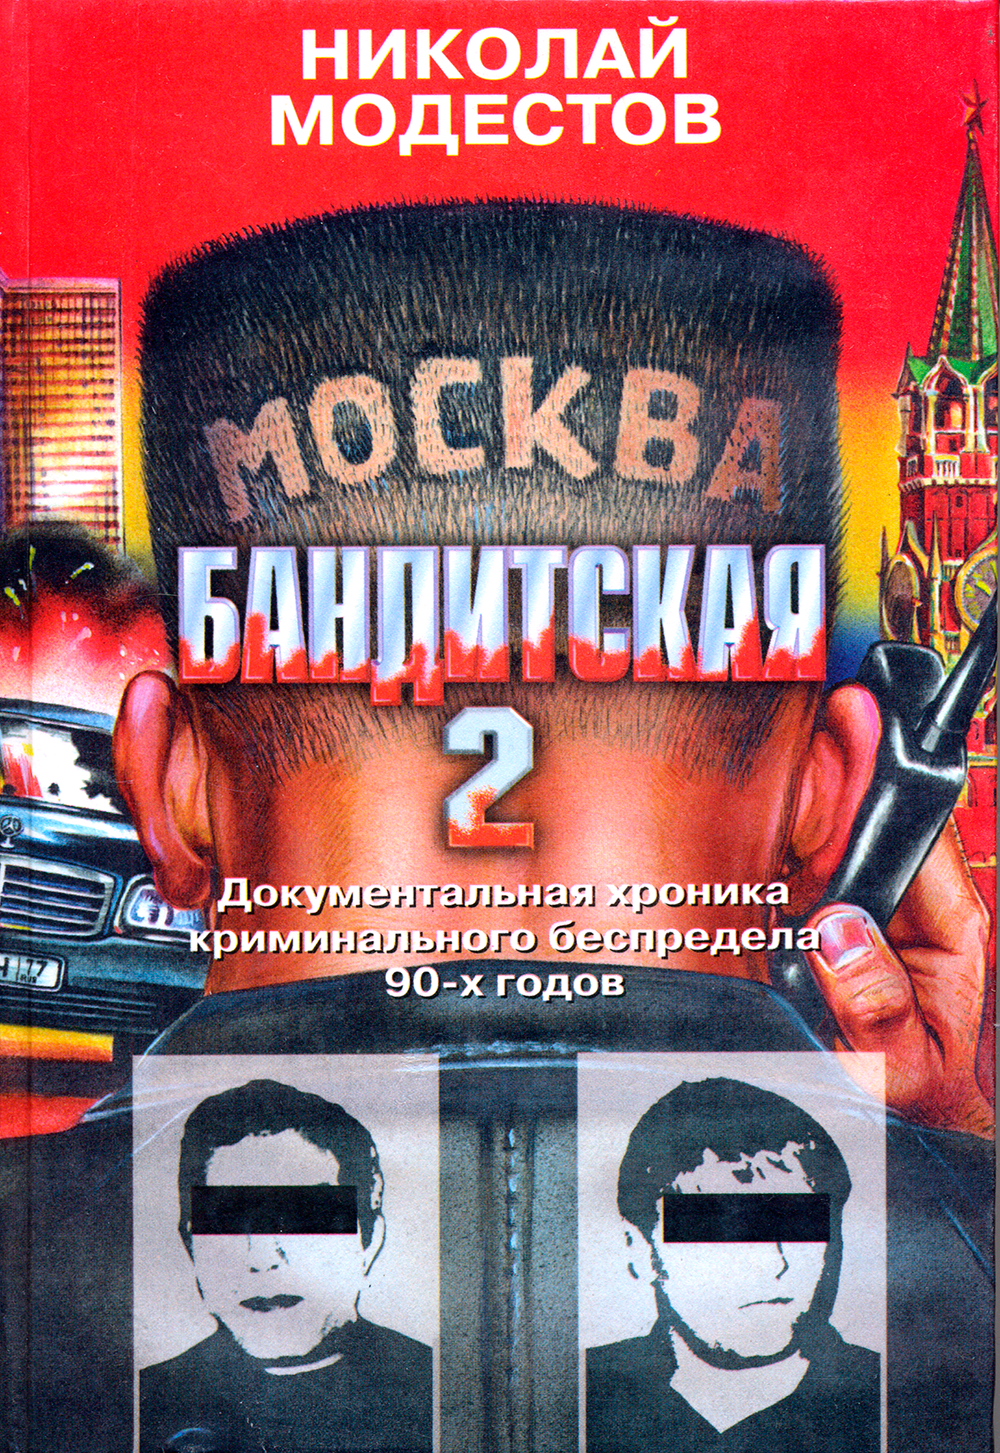 читать Николай Модестов «Москва бандитская 2»